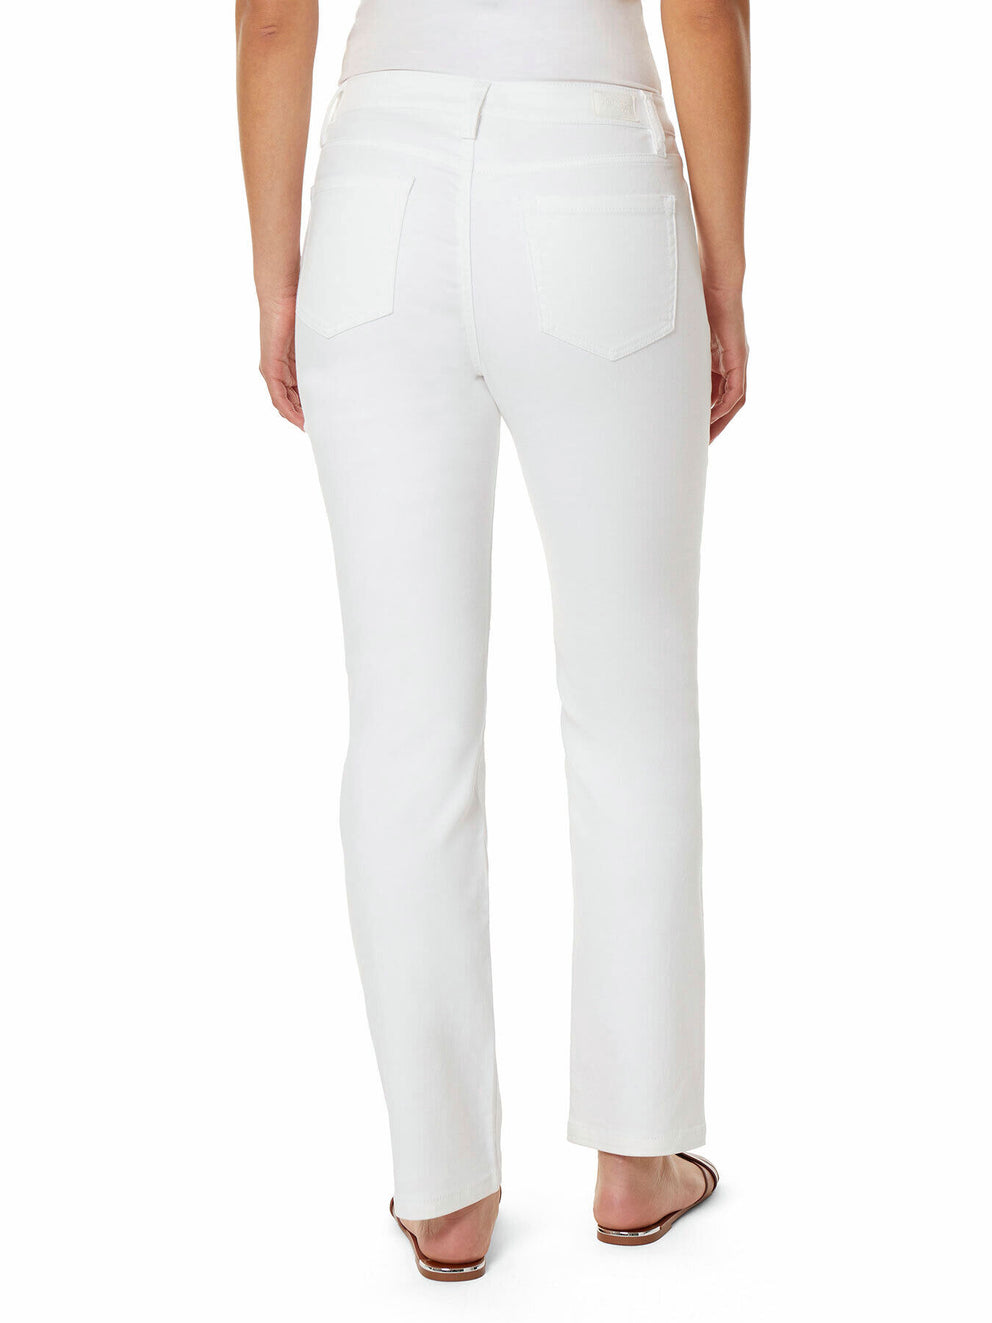 Lexington Jeans - White Straight Leg Jeans | Jones New York